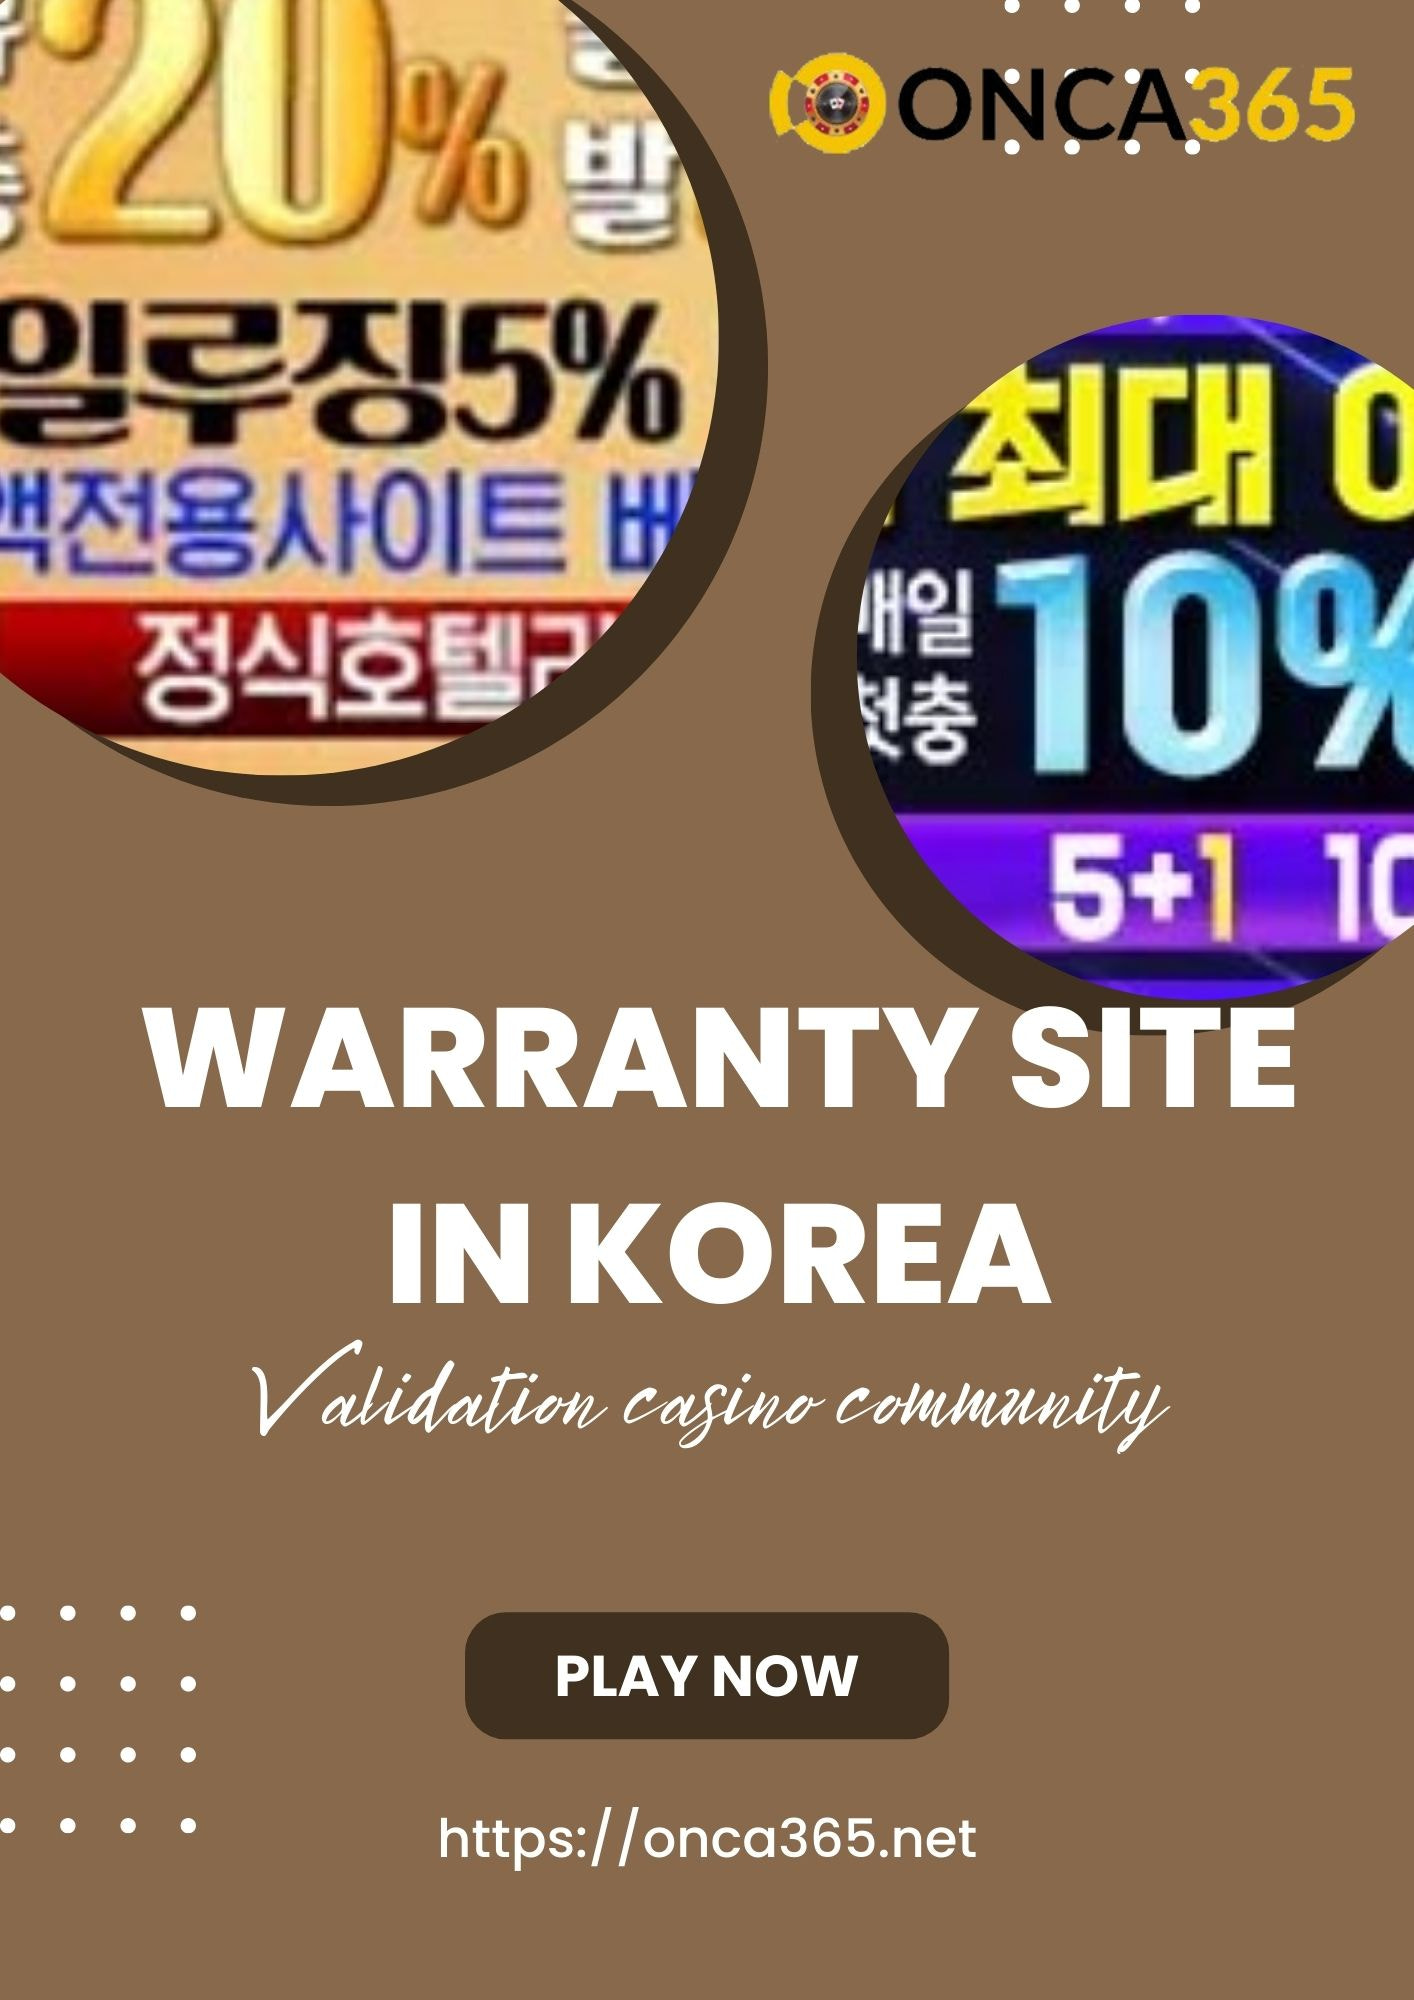 Warranty site in Korea